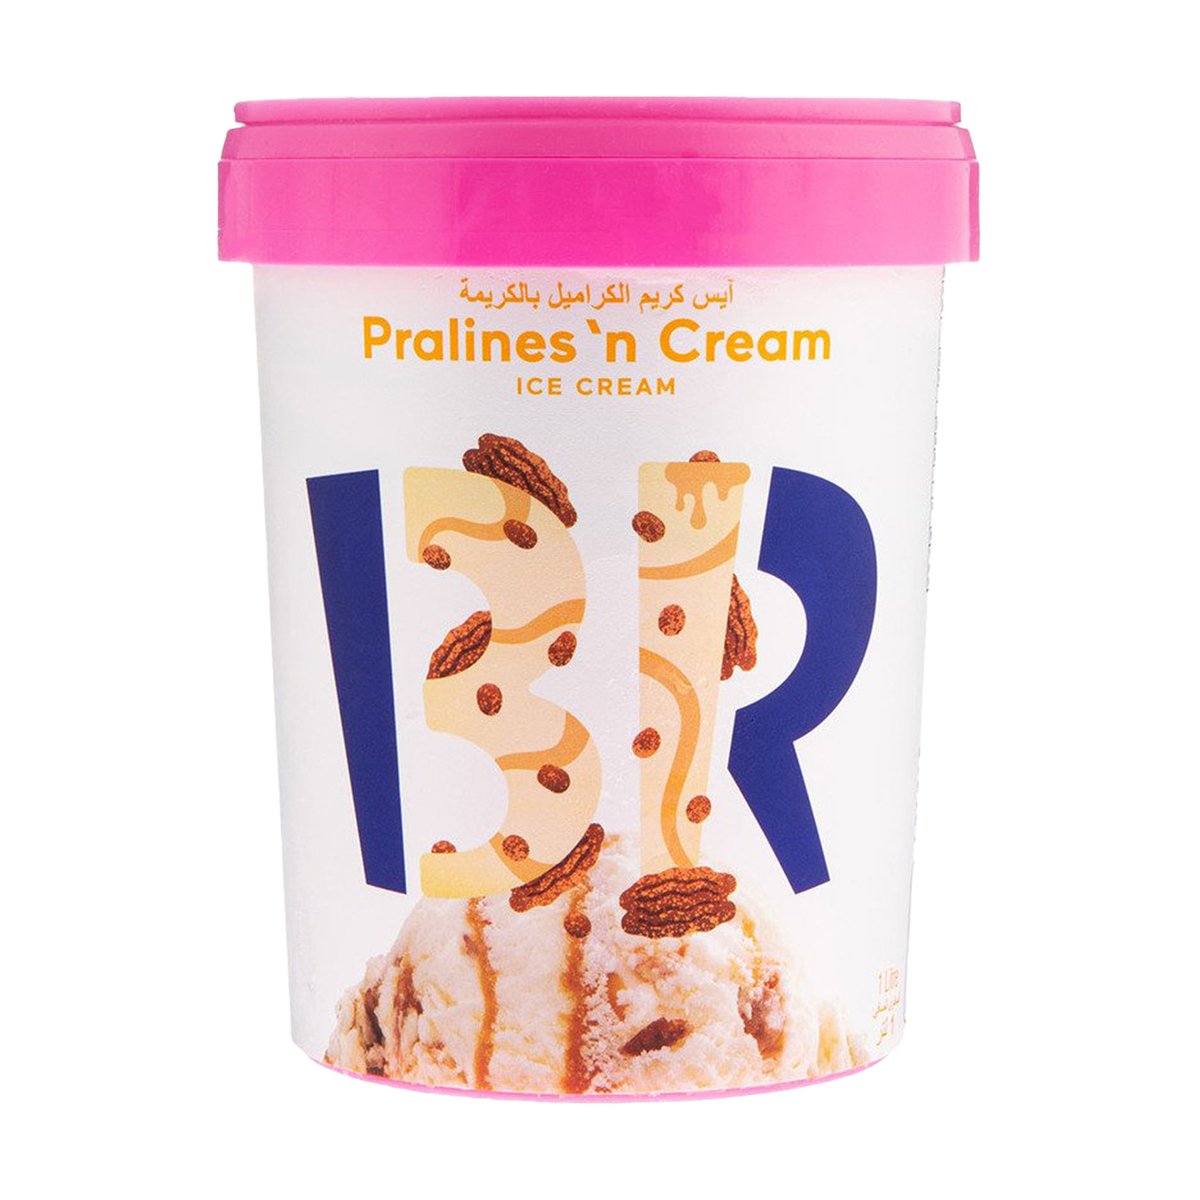 اشتري قم بشراء باسكن روبنز آيس كريم الكراميل بالكريمة 1 لتر Online at Best Price من الموقع - من لولو هايبر ماركت Ice Cream Take Home في الامارات